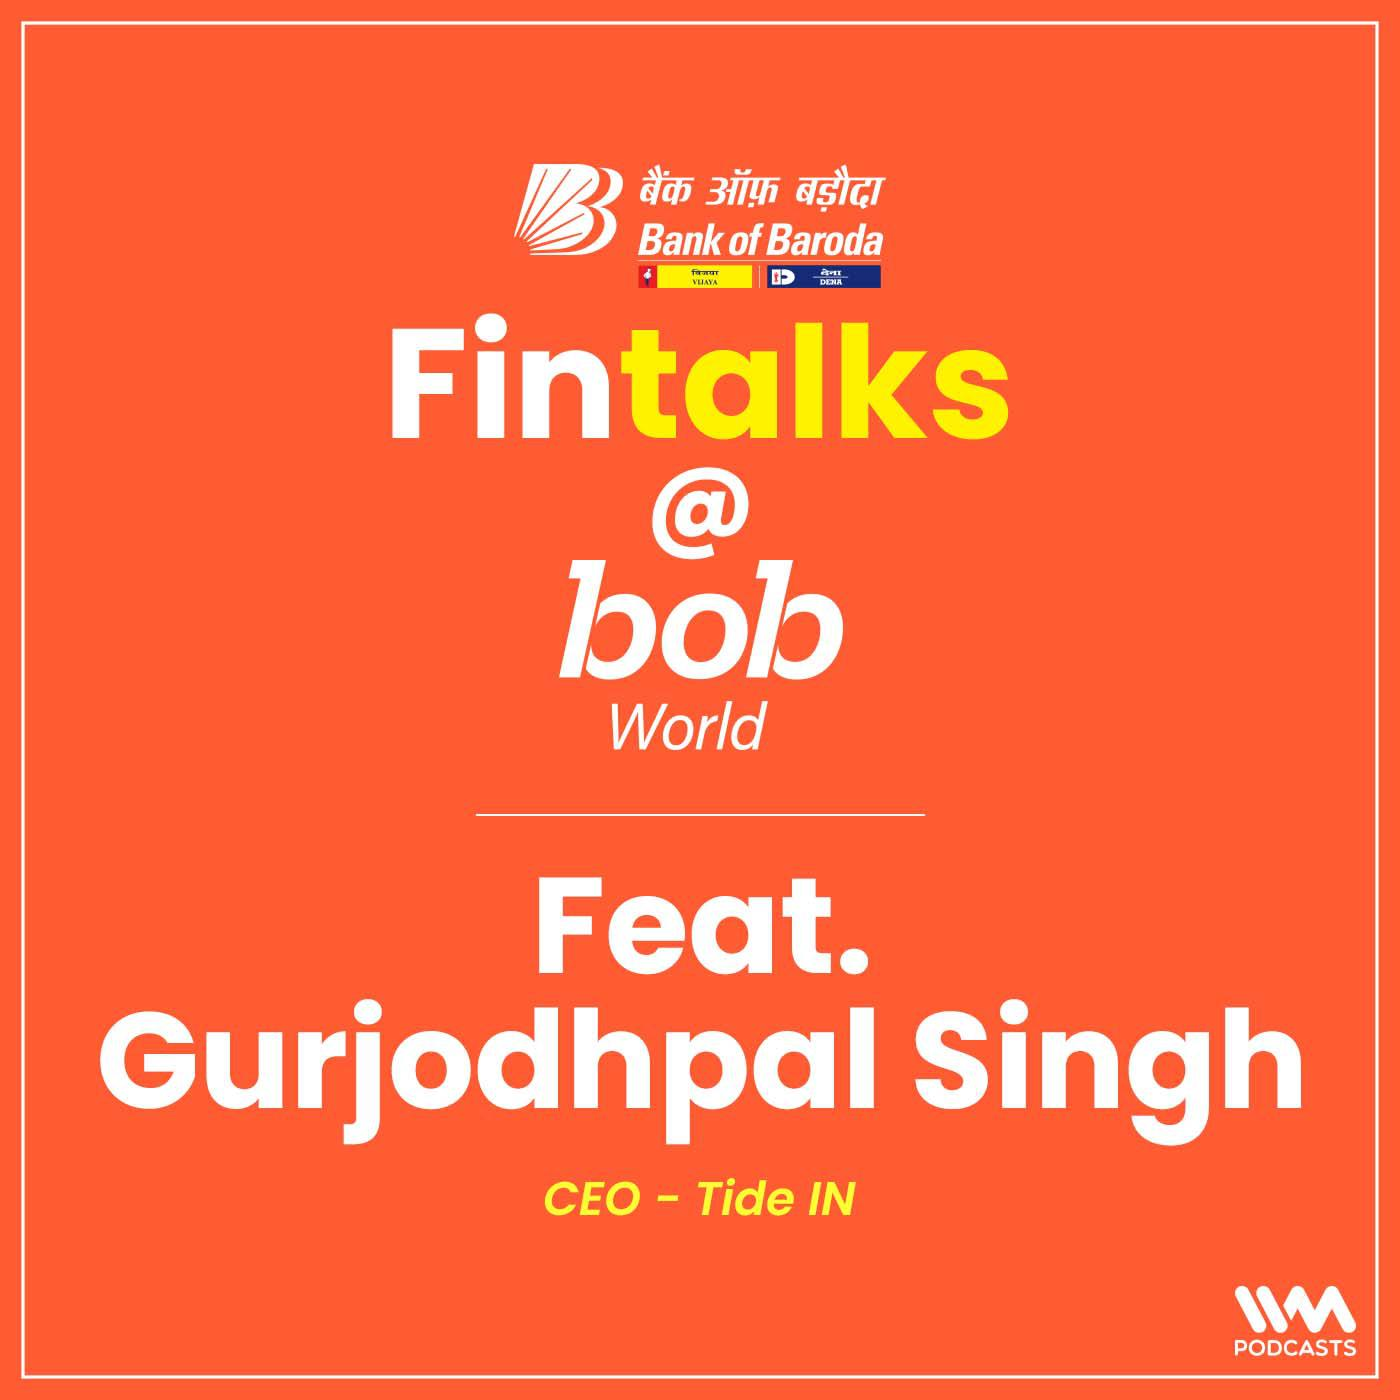 Feat. Gurjodhpal Singh